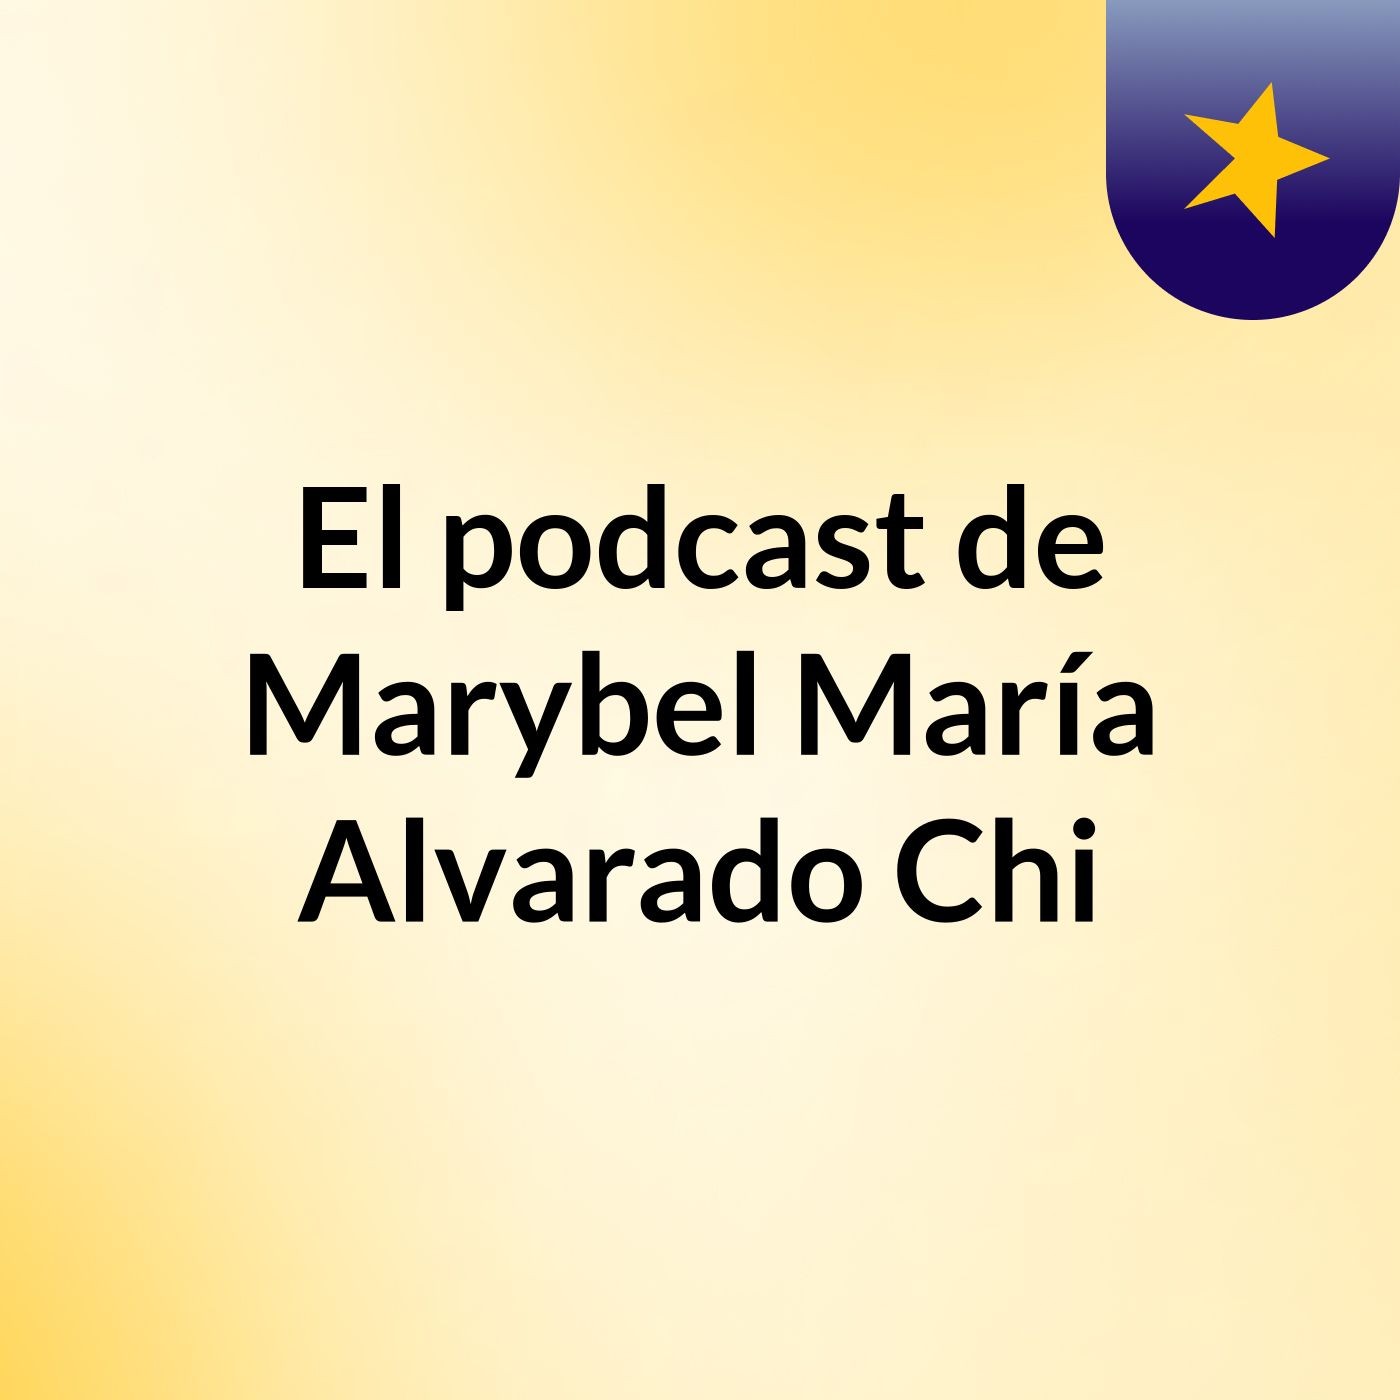 El podcast de Marybel María Alvarado Chi